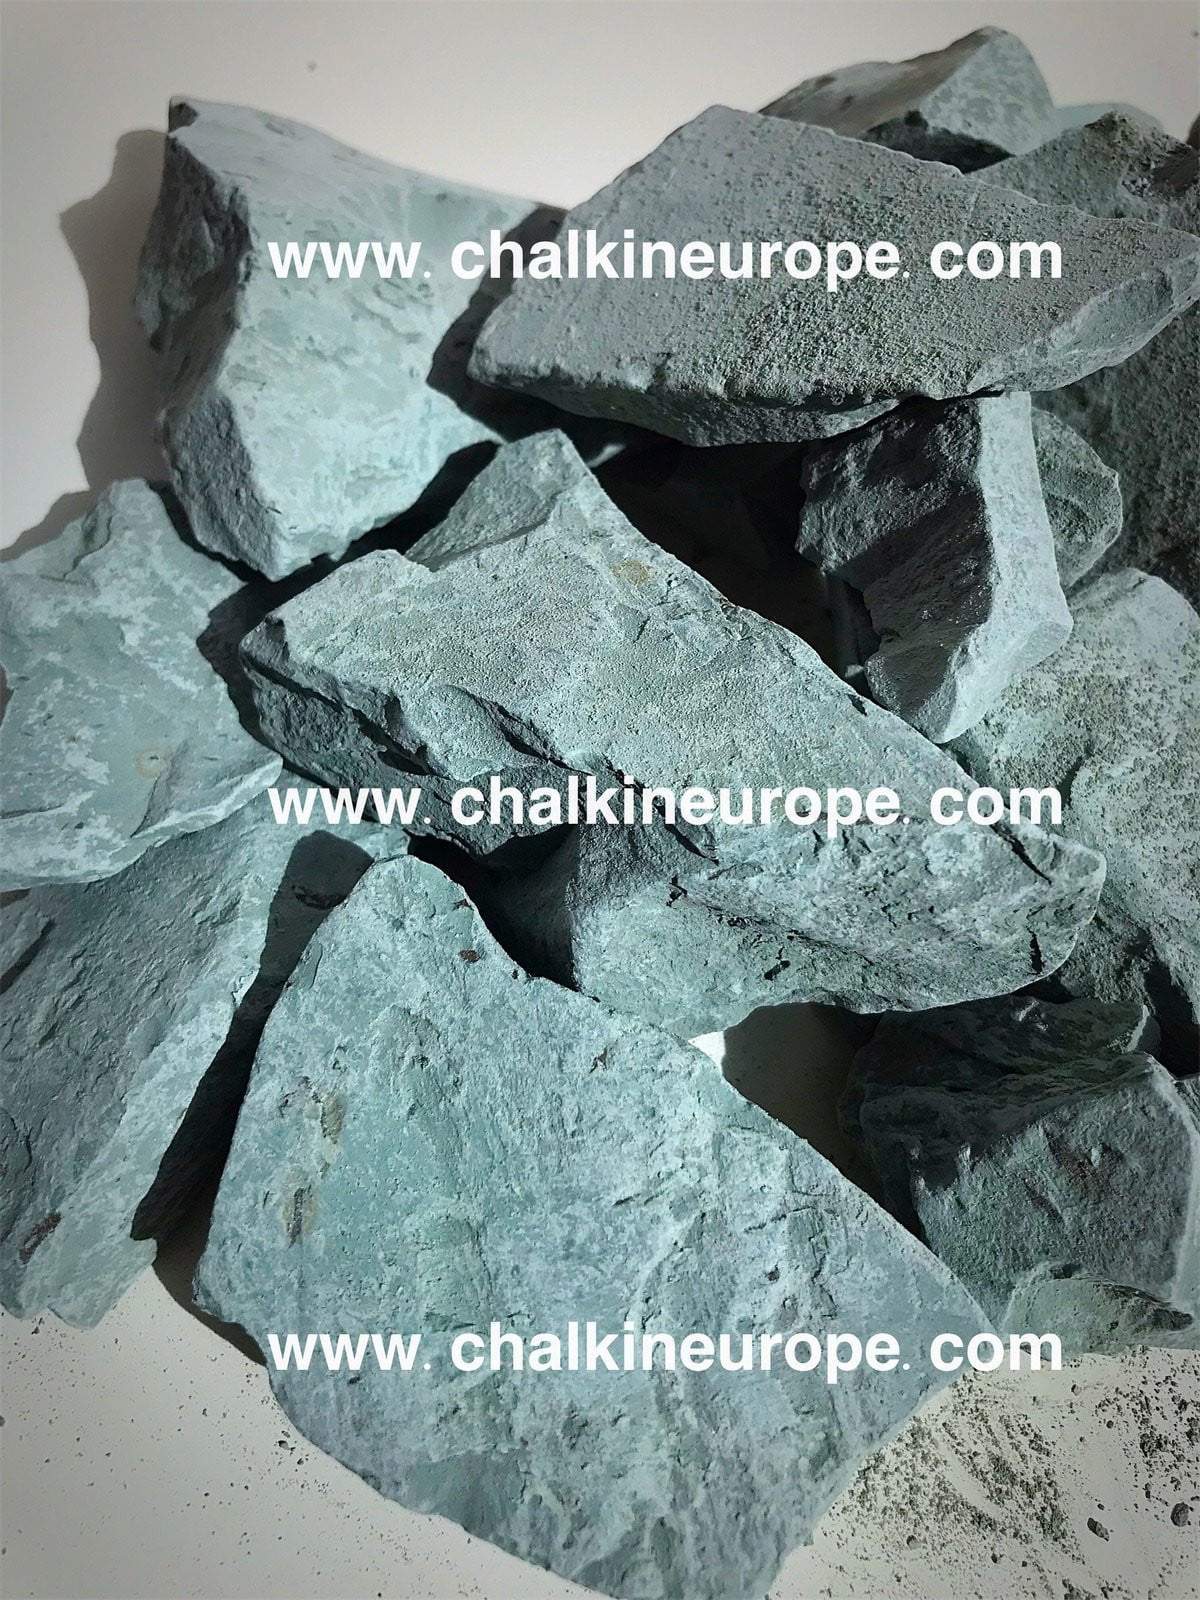 Kambrijas zilais māls - Chalkineurope